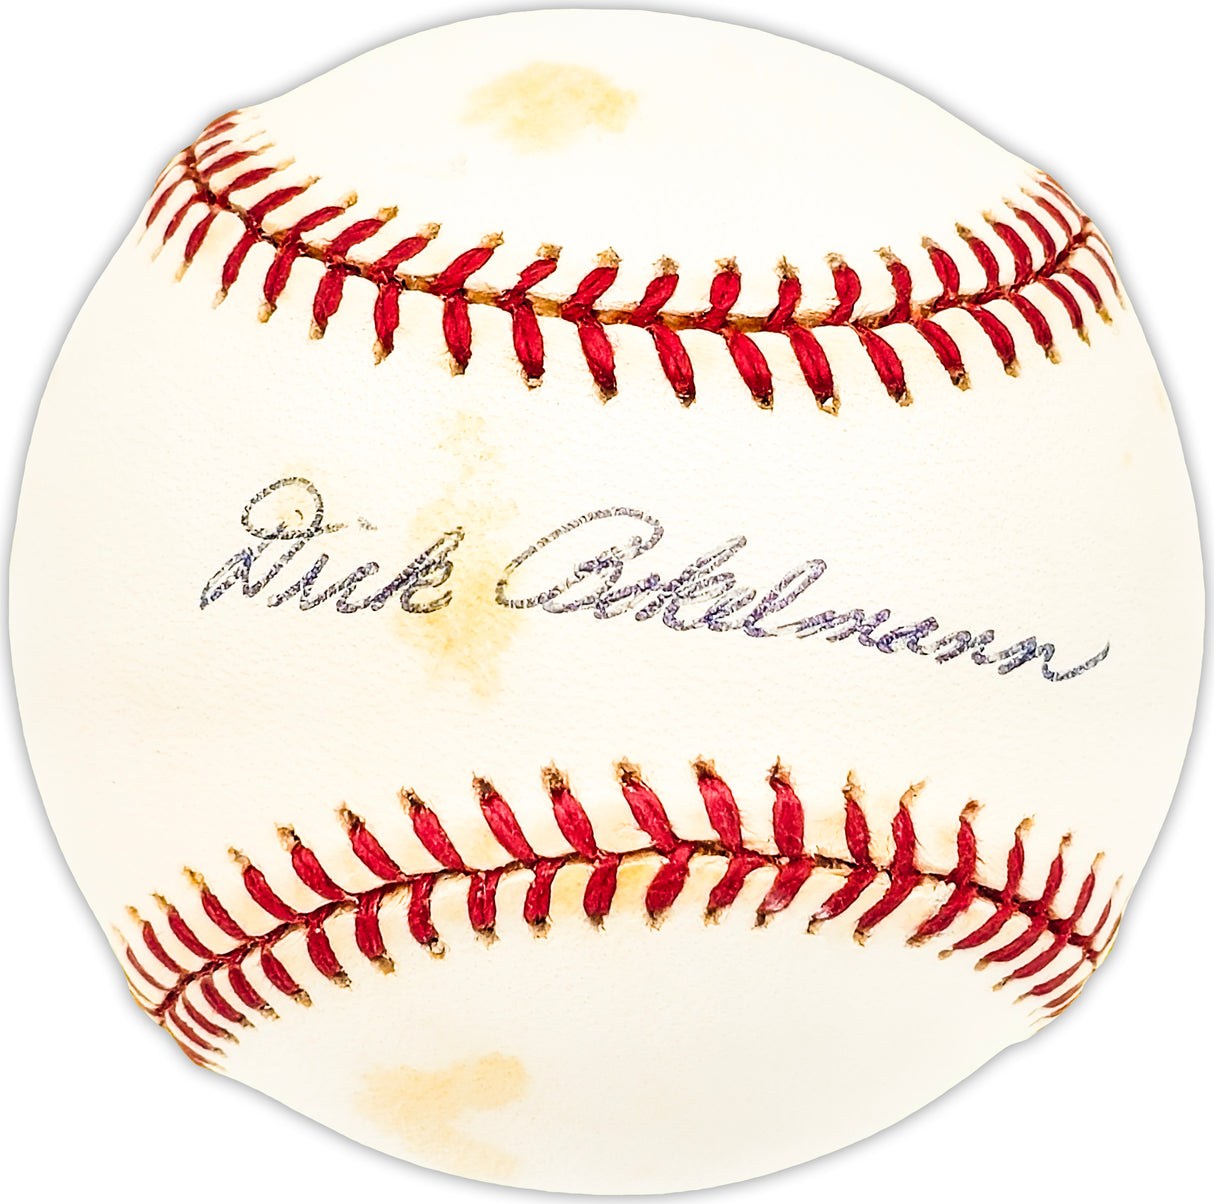 Dick Bokelmann Autographed Official NL Baseball St. Louis Cardinals Beckett BAS QR #BM25727